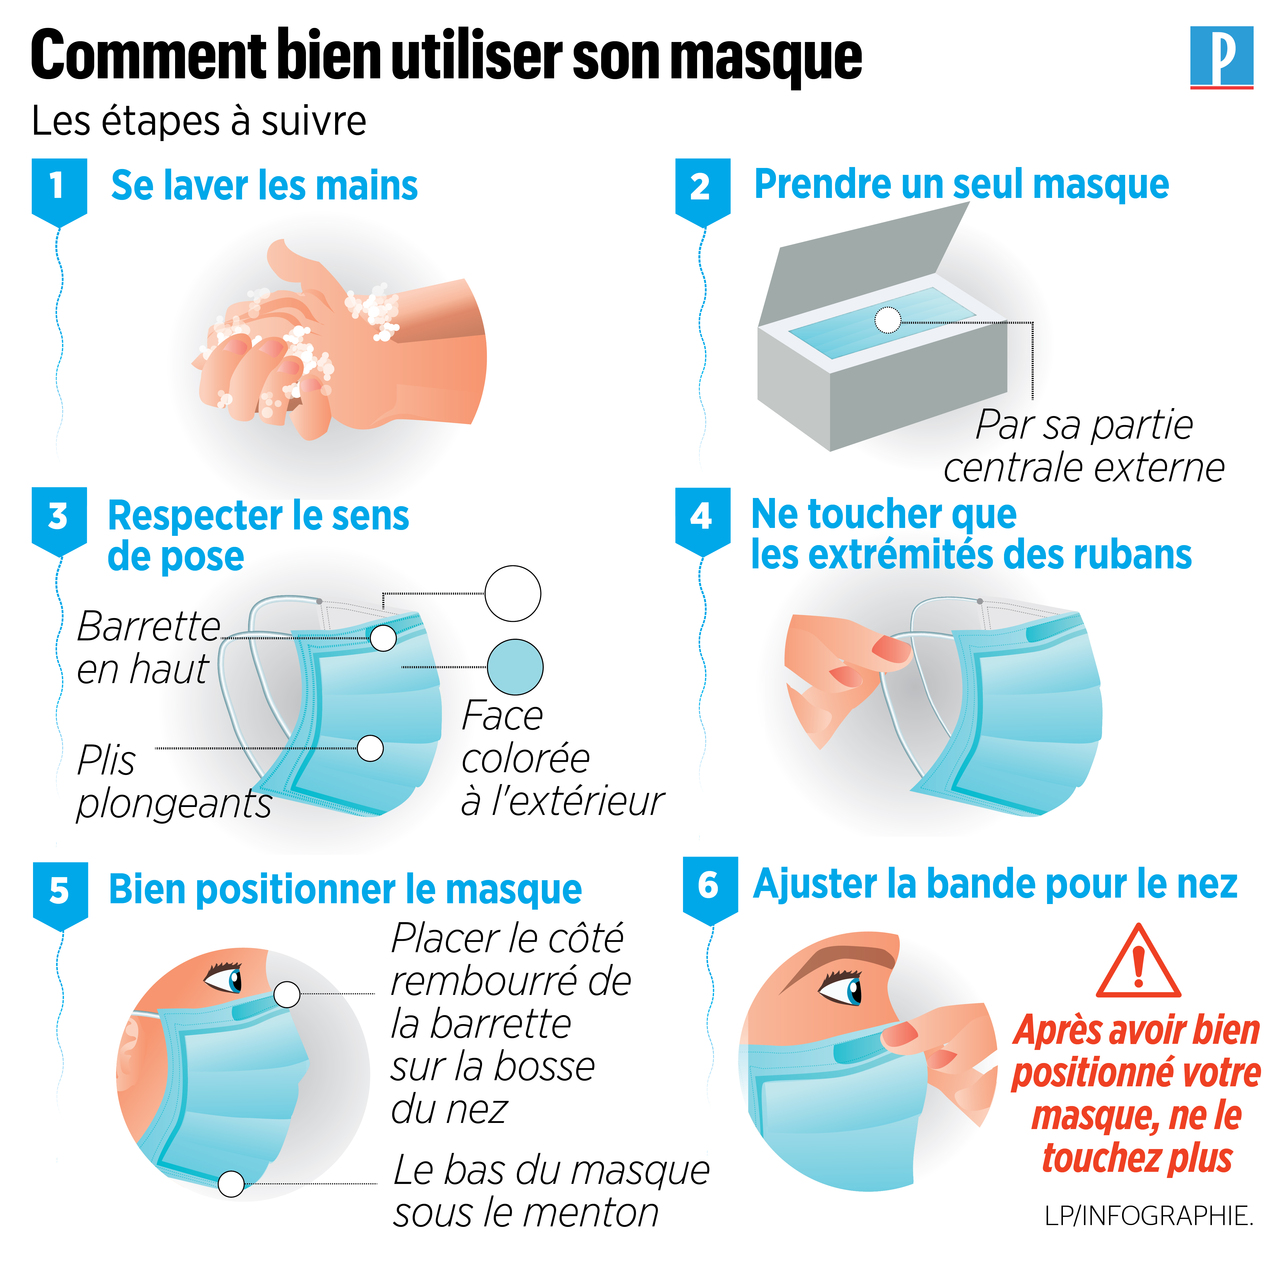 Pourquoi L'Anses ne recommande pas le port d'un masque anti-pollution ?